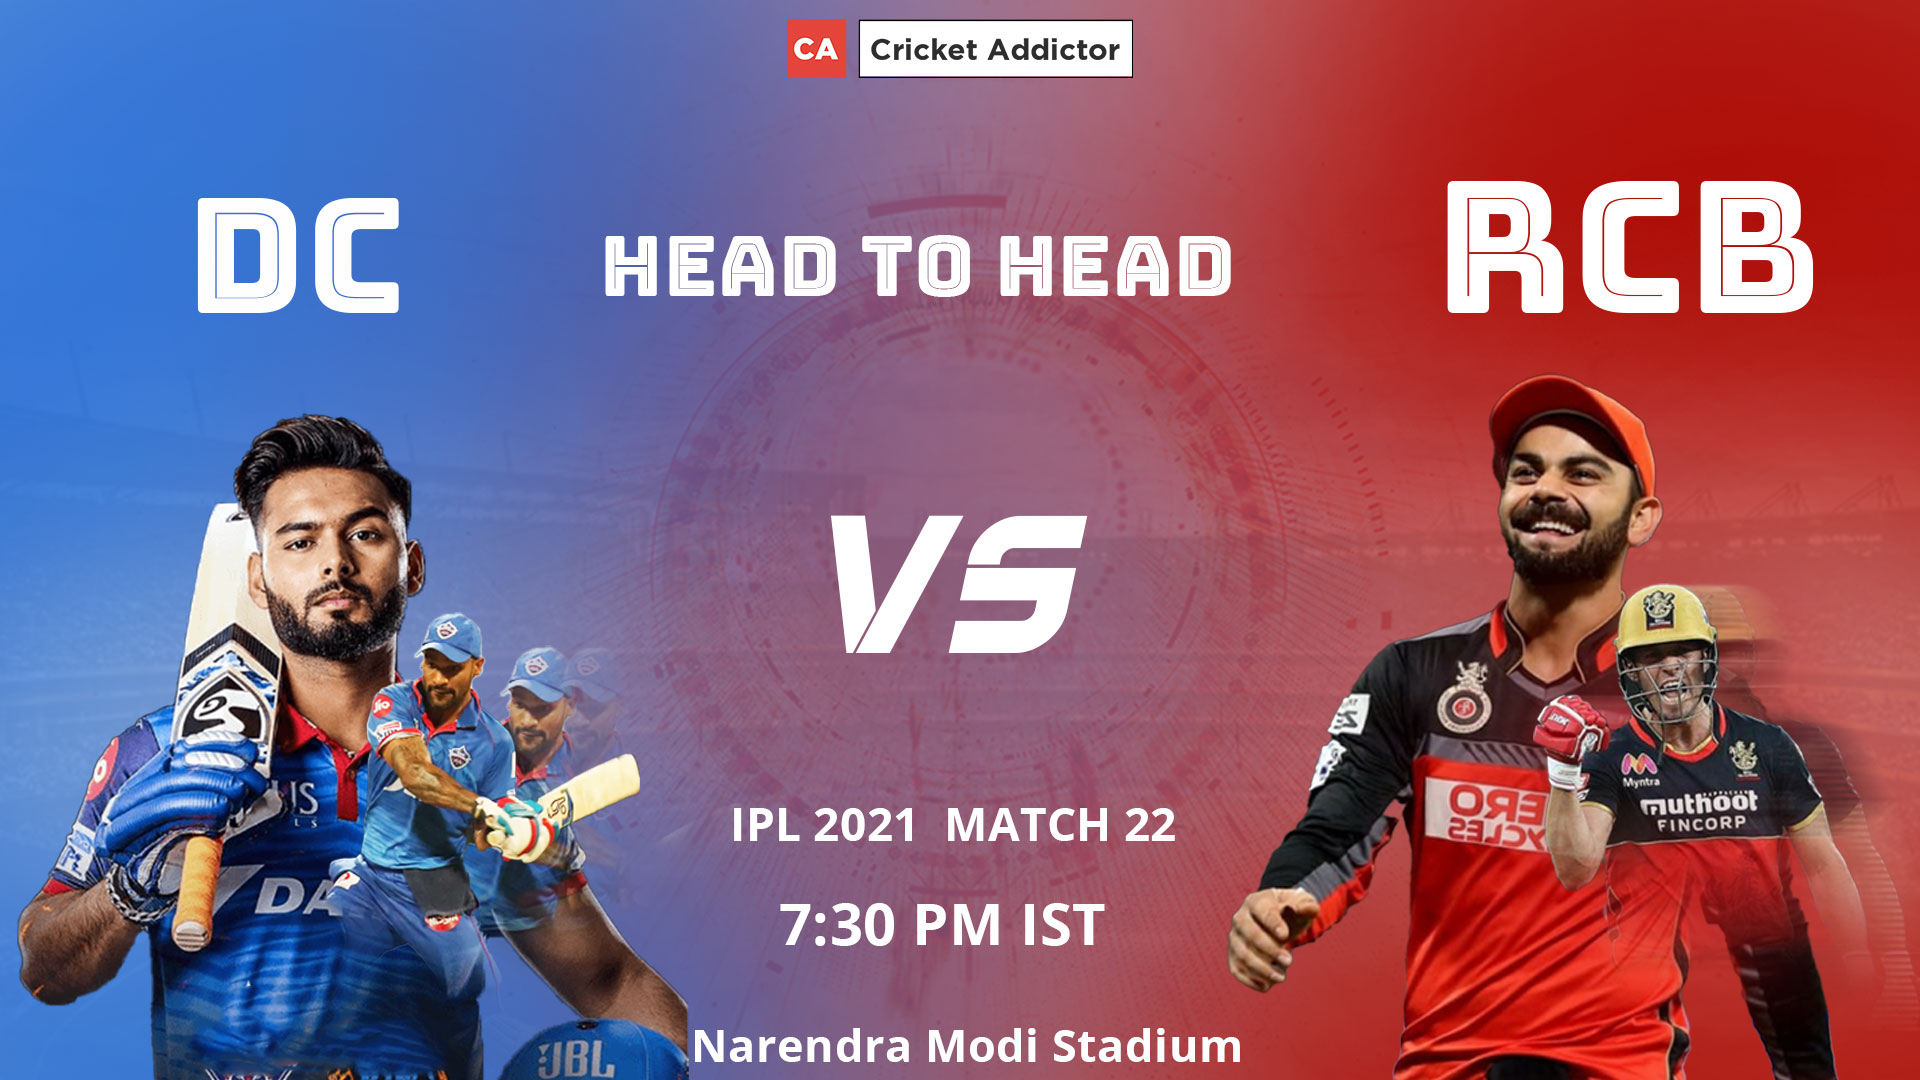 IPL 2021, Delhi Capitals, Royal Challengers Bangalore, DC vs RCB, Head-to-Head